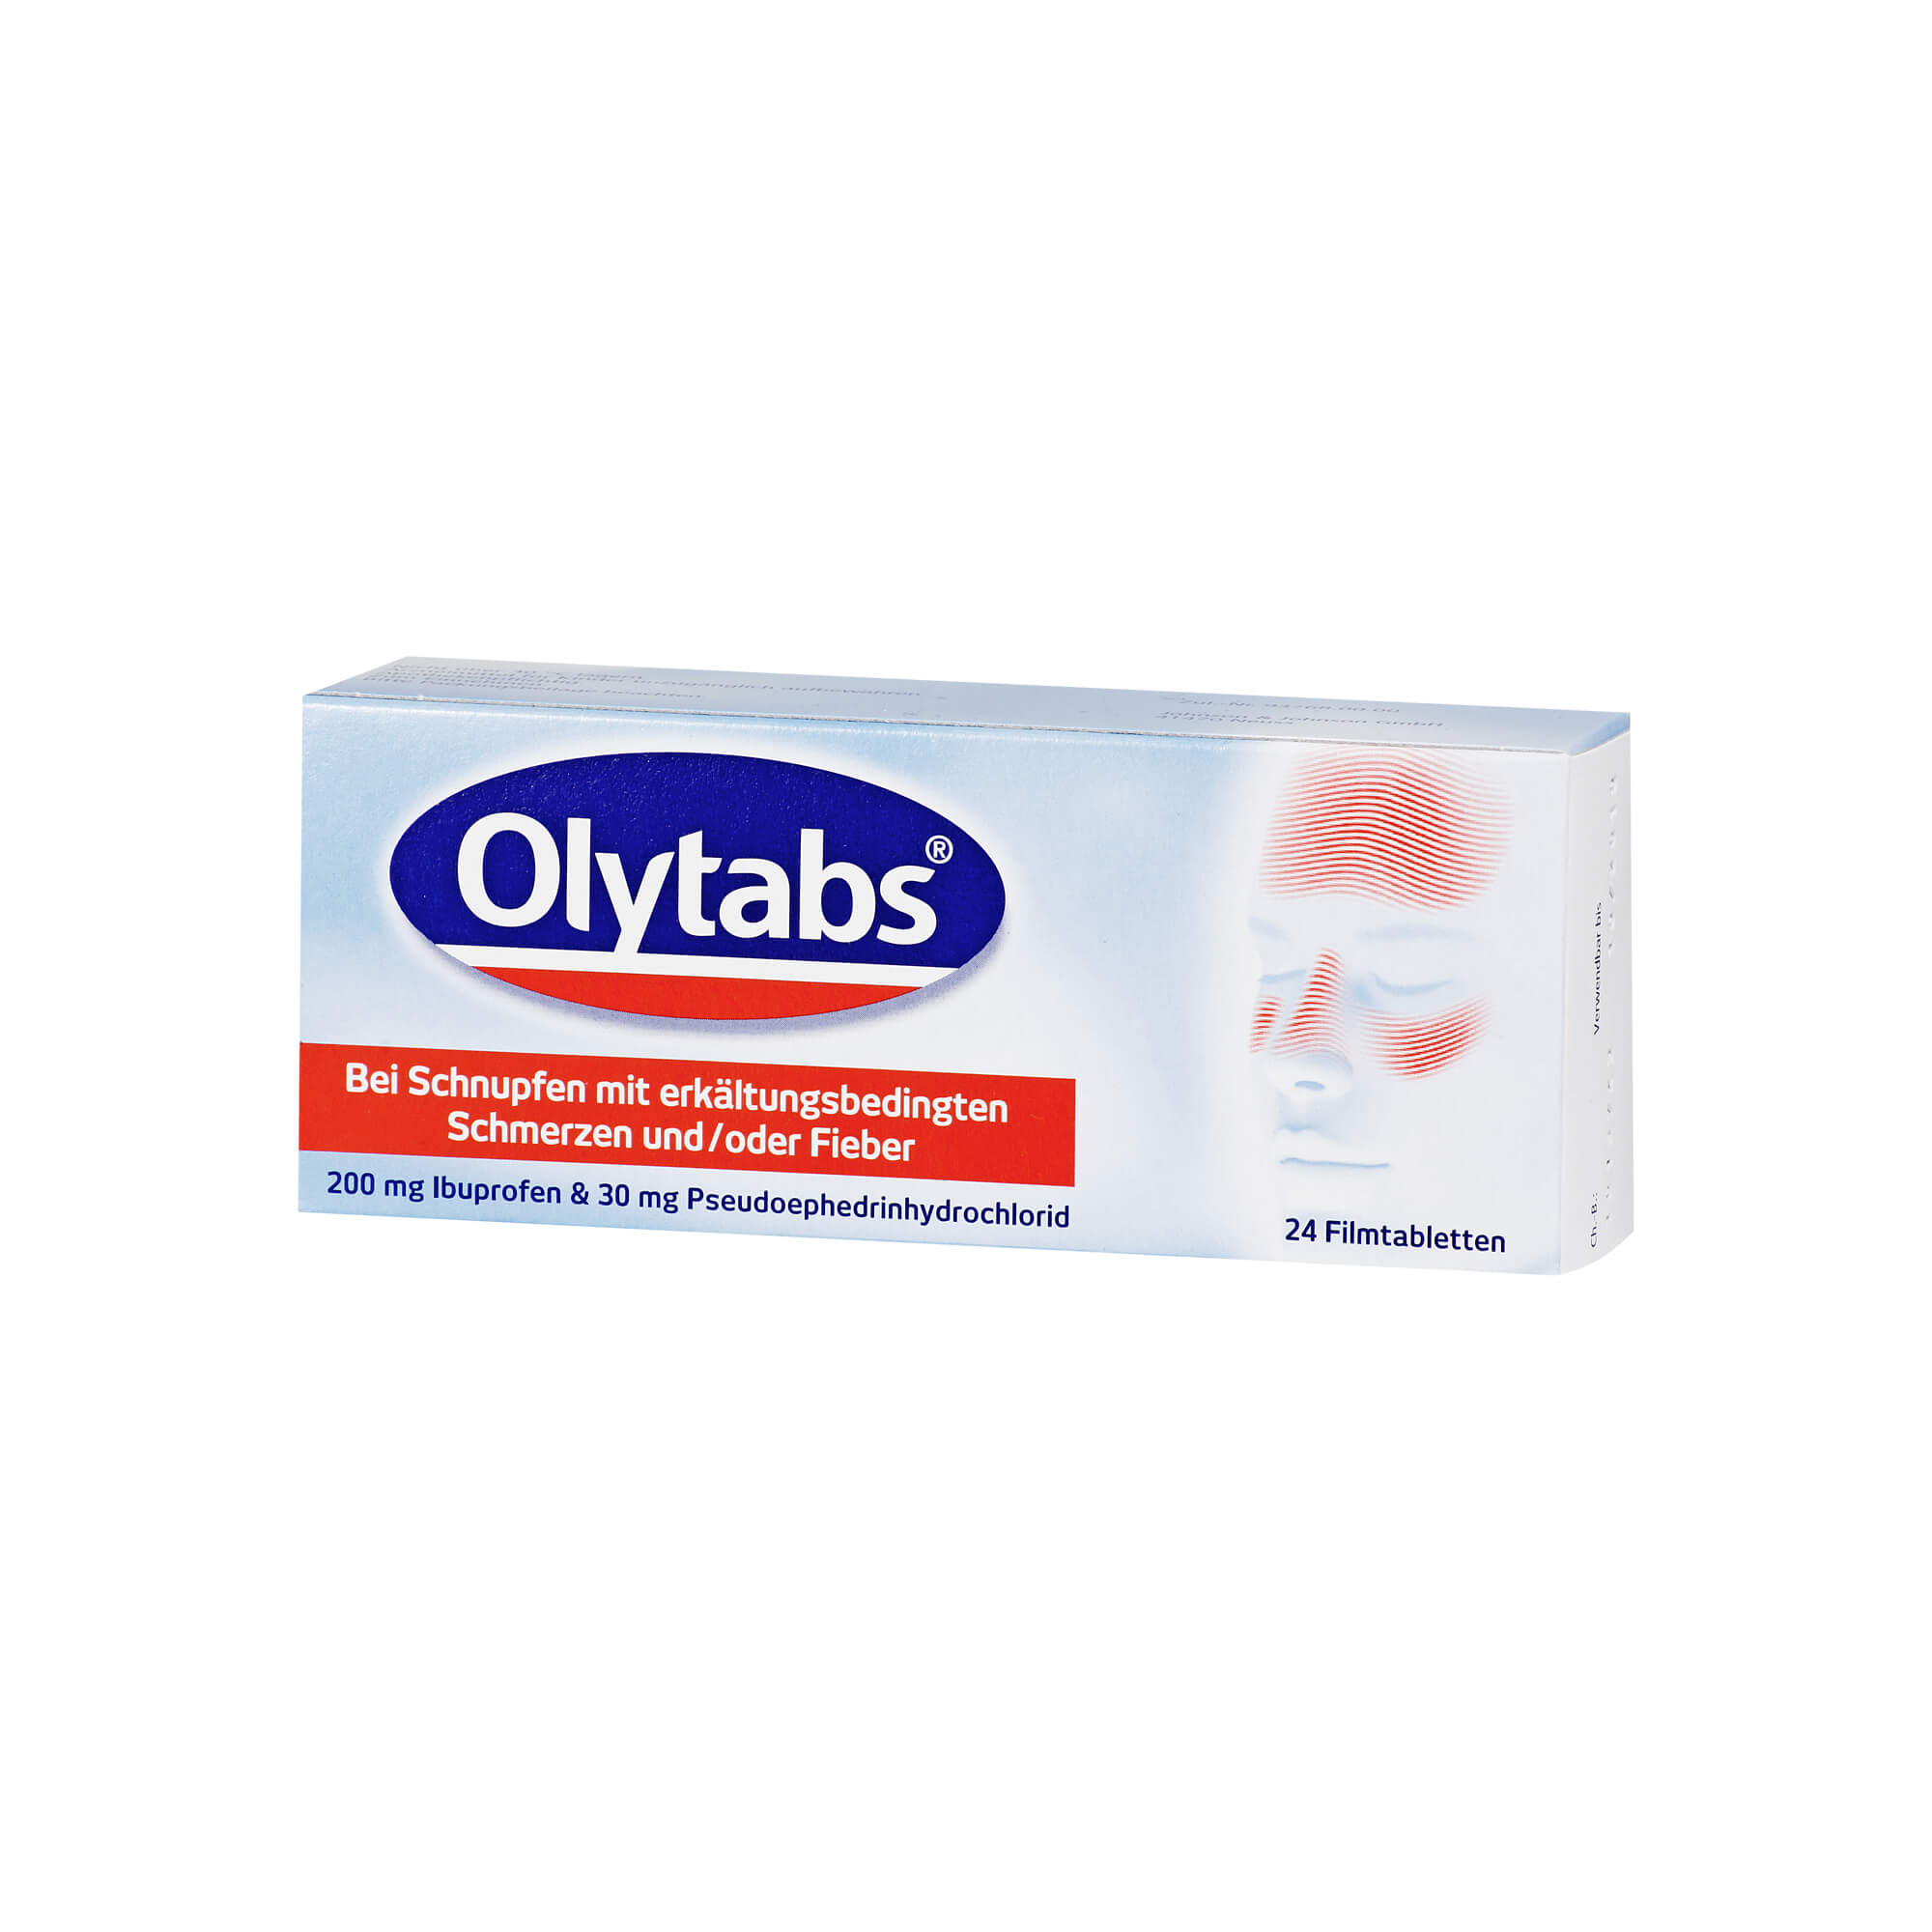 Zur symptomatischen Behandlung der Nasenschleimhautschwellung bei Schnupfen mit erkältungsbedingten Schmerzen und/oder Fieber.